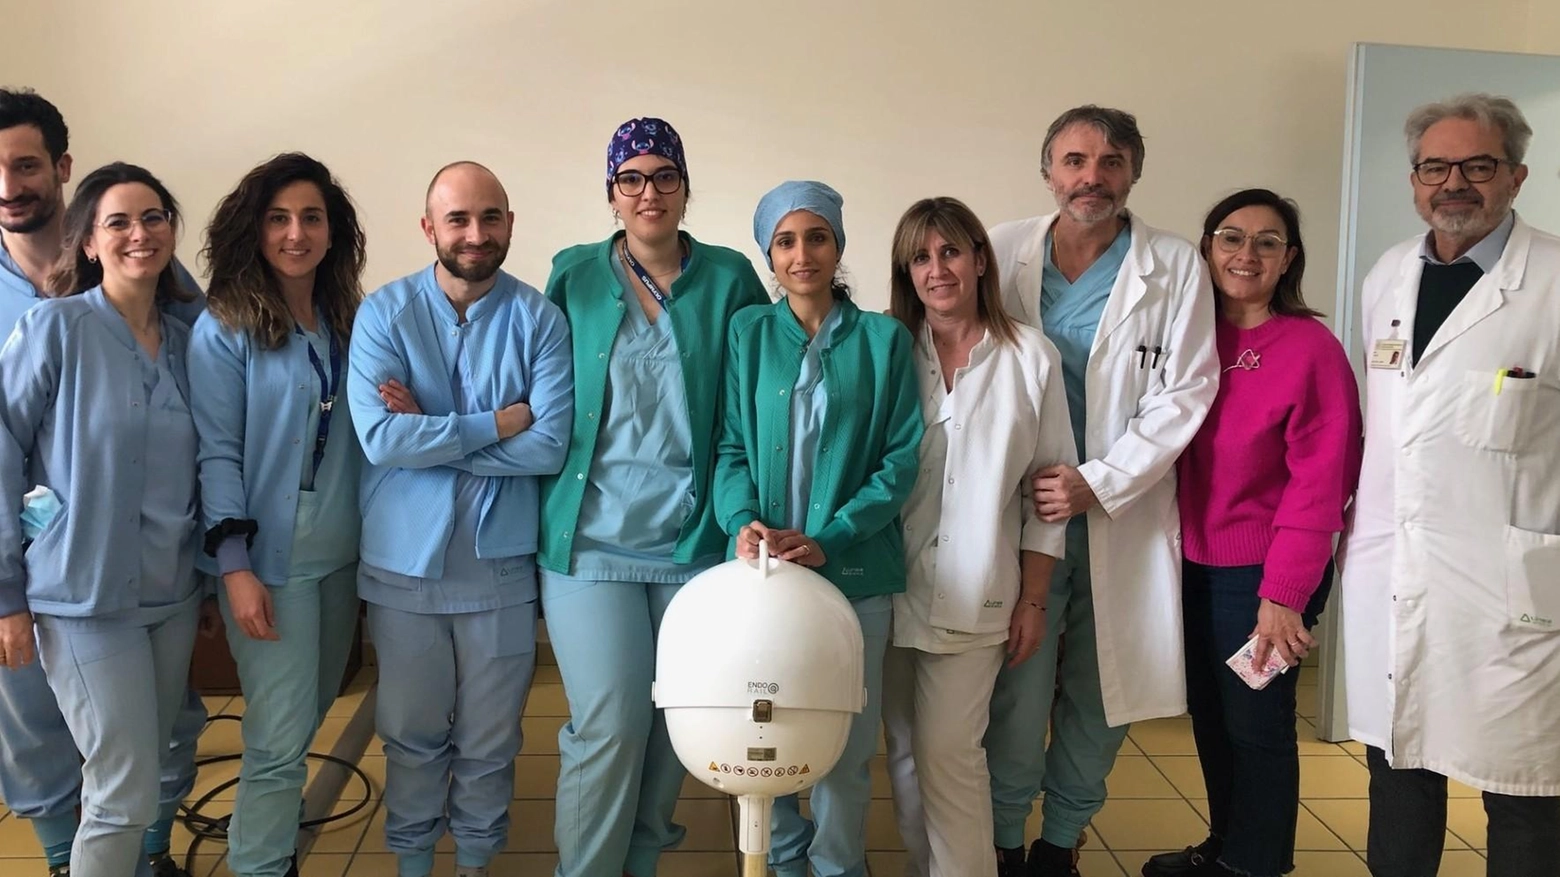 L'Istituto Oncologico Romagnolo dona all'ospedale Morgagni-Pierantoni strumentazione di ultima generazione per migliorare la diagnosi precoce dei tumori gastroenterici.